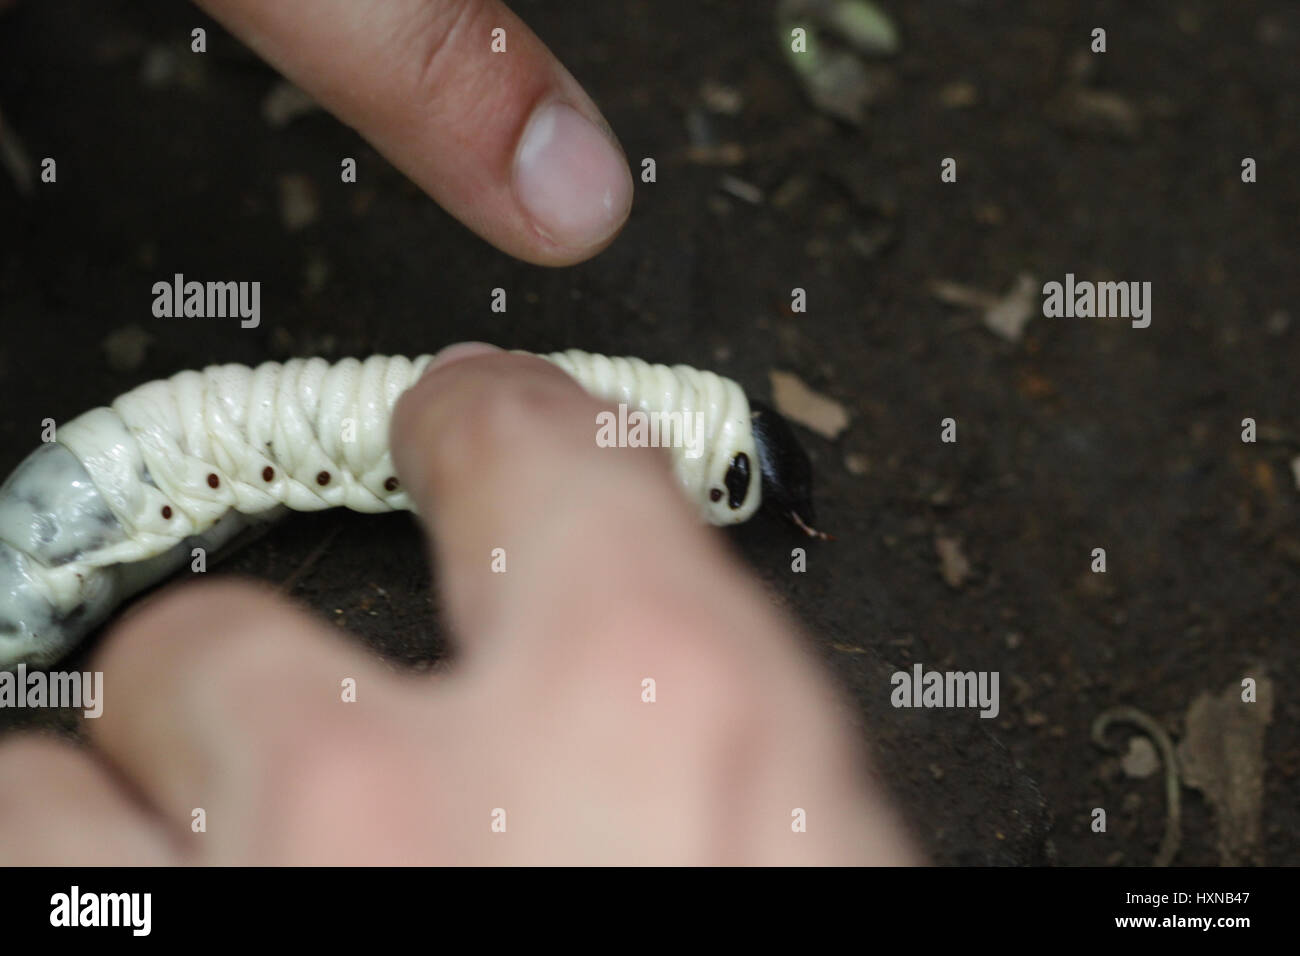 Giant grub worms Stock Photo